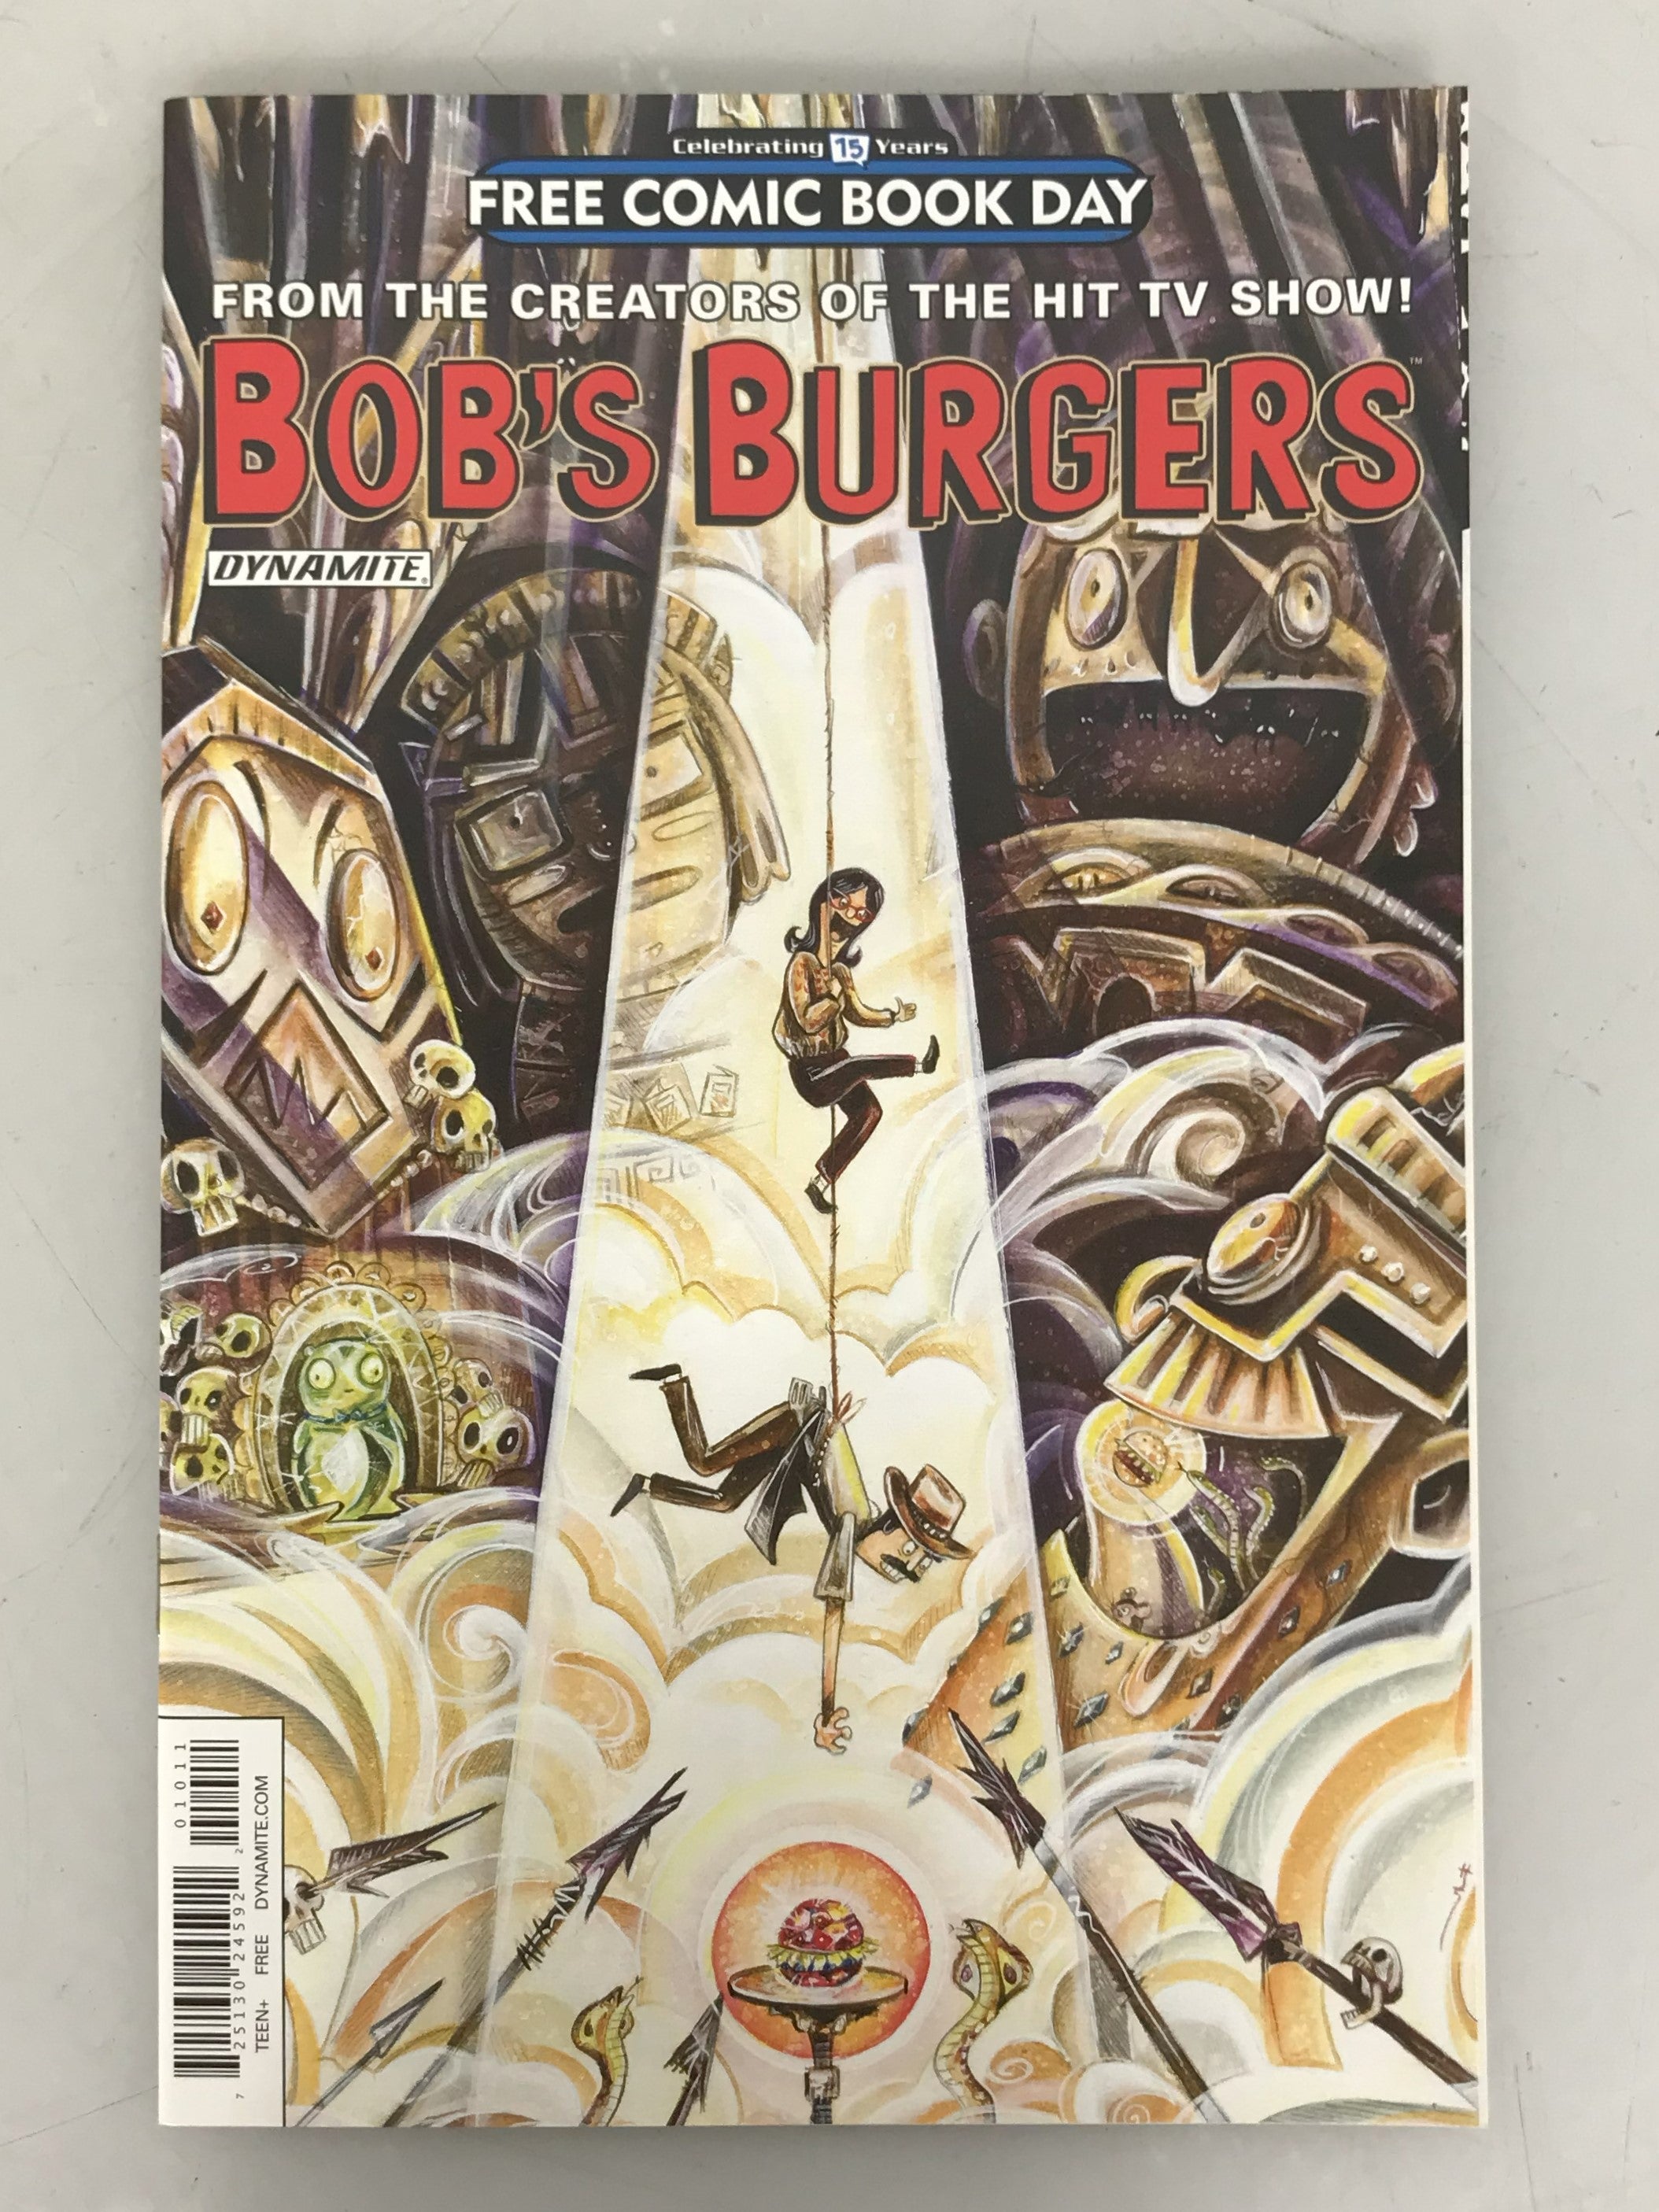 Bob's Burgers Free Comic Book Day 2016